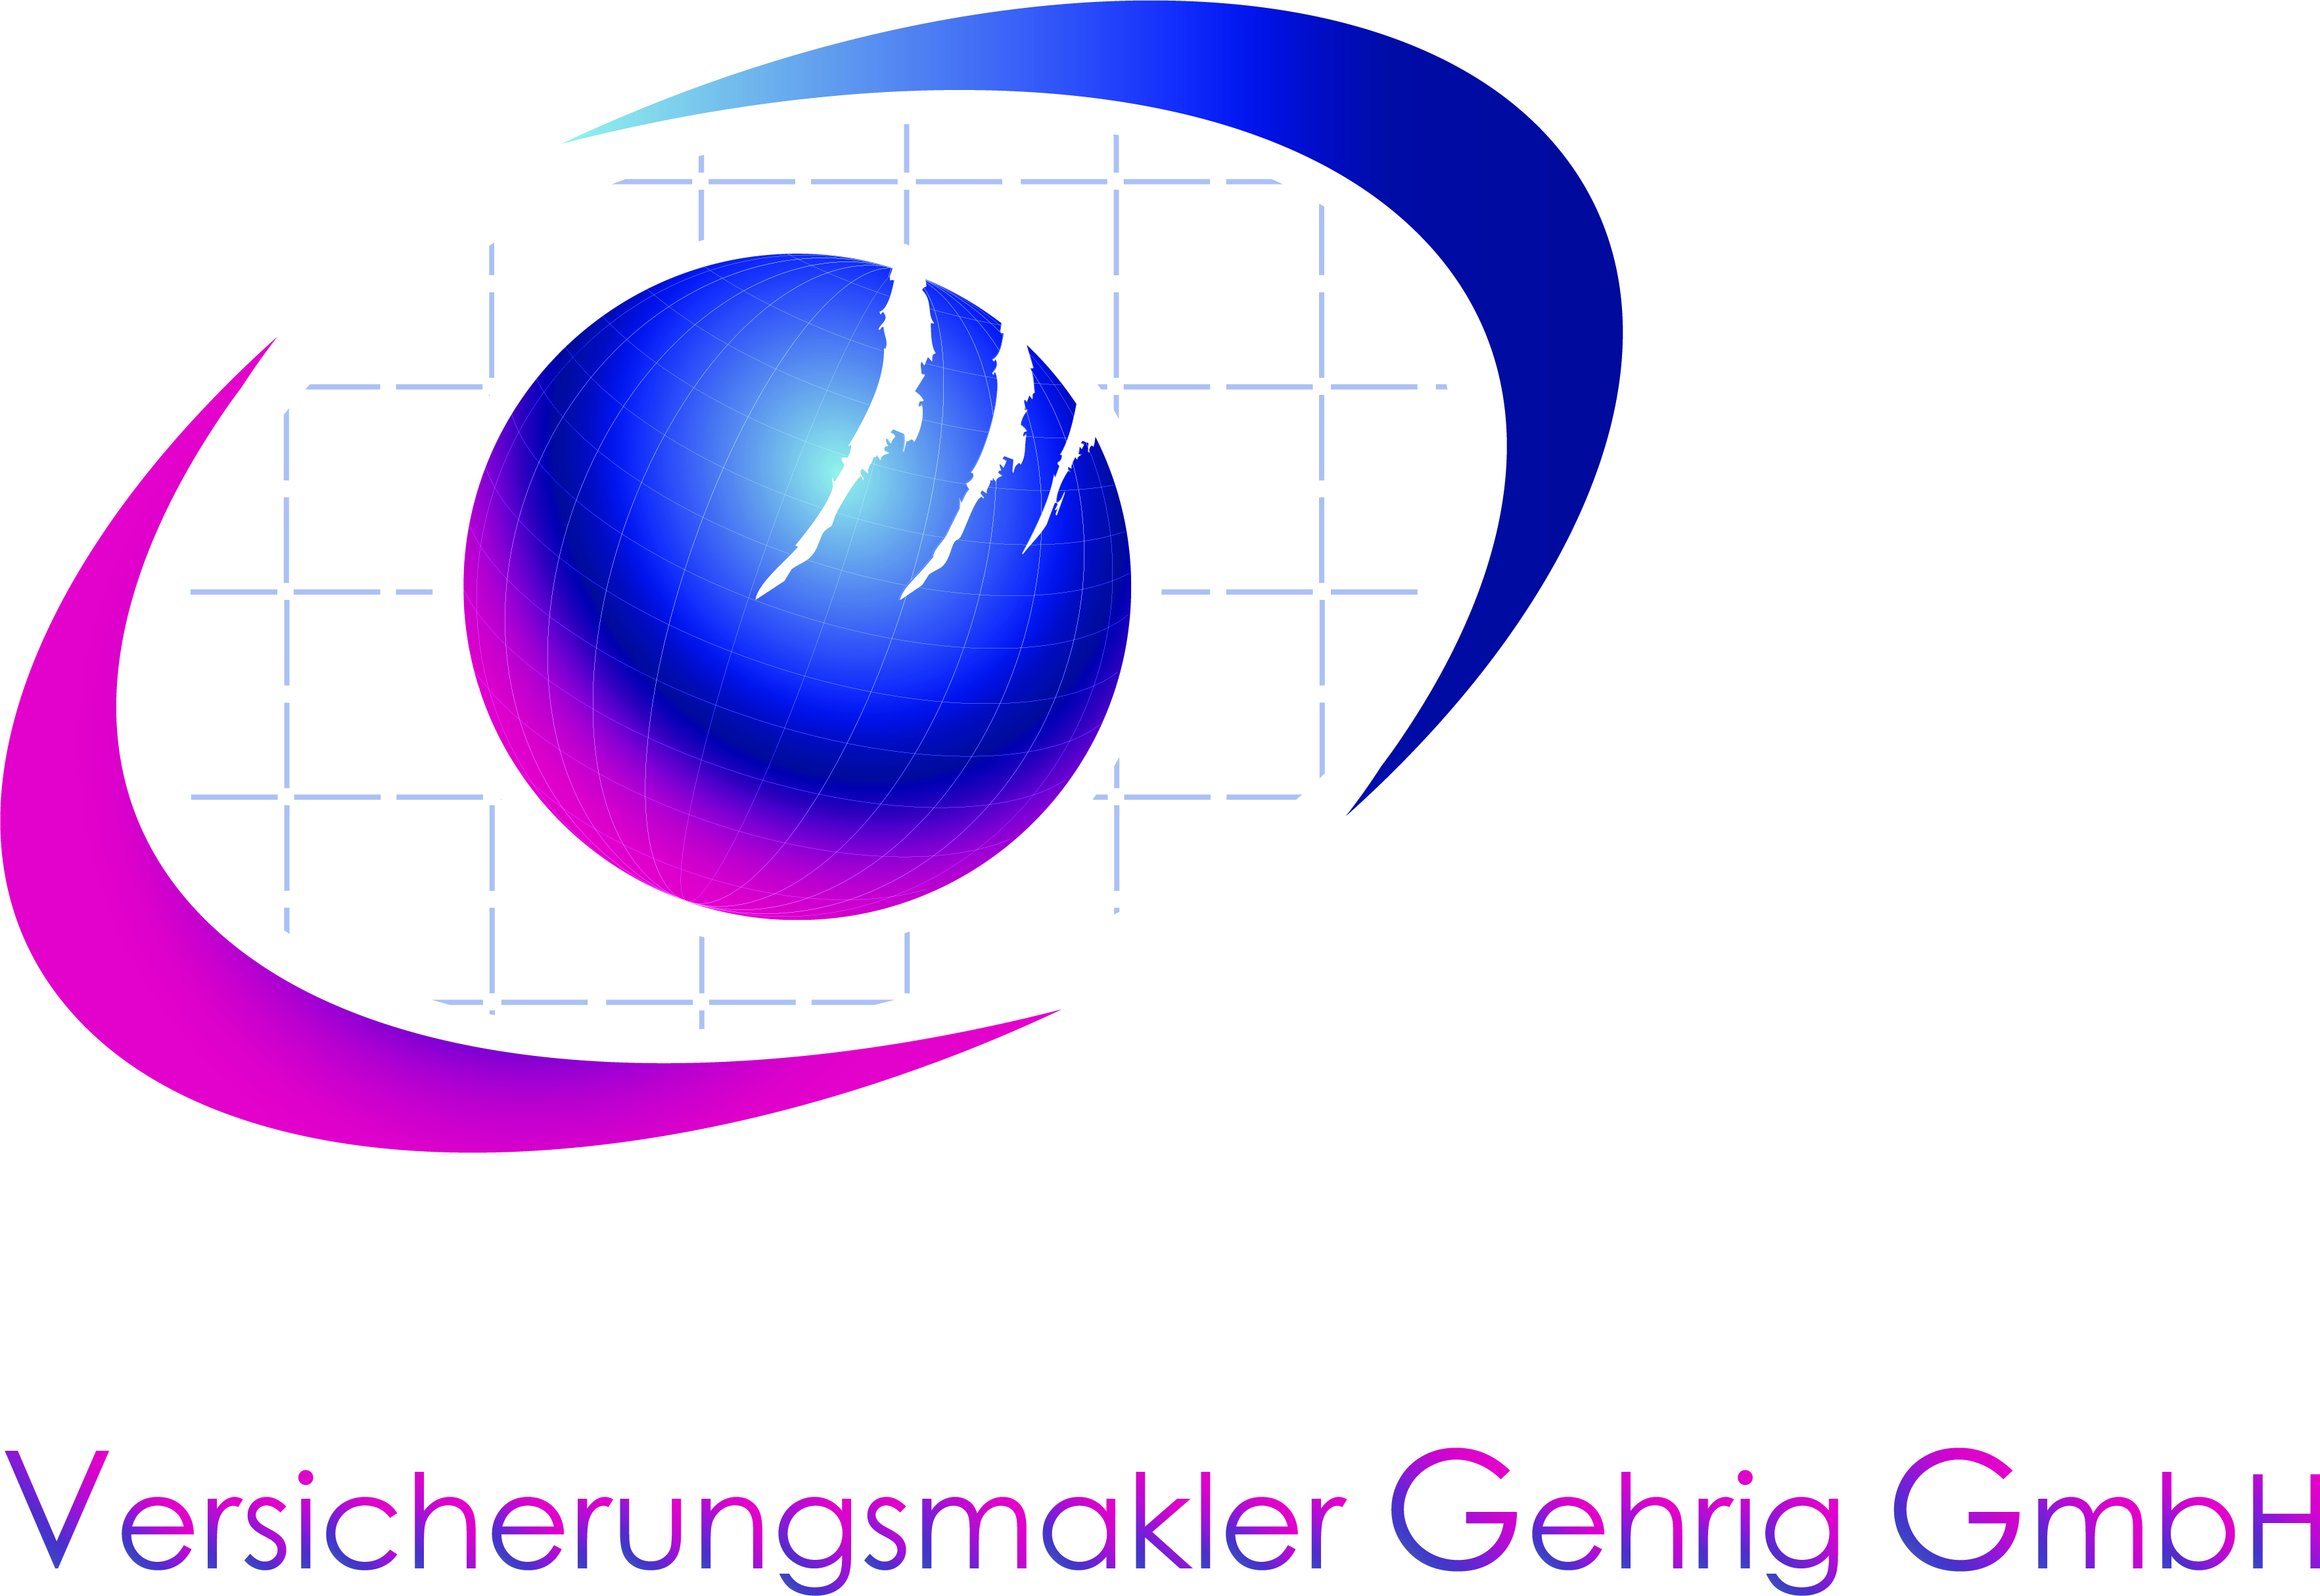 Versicherungsmakler Gehrig GmbH